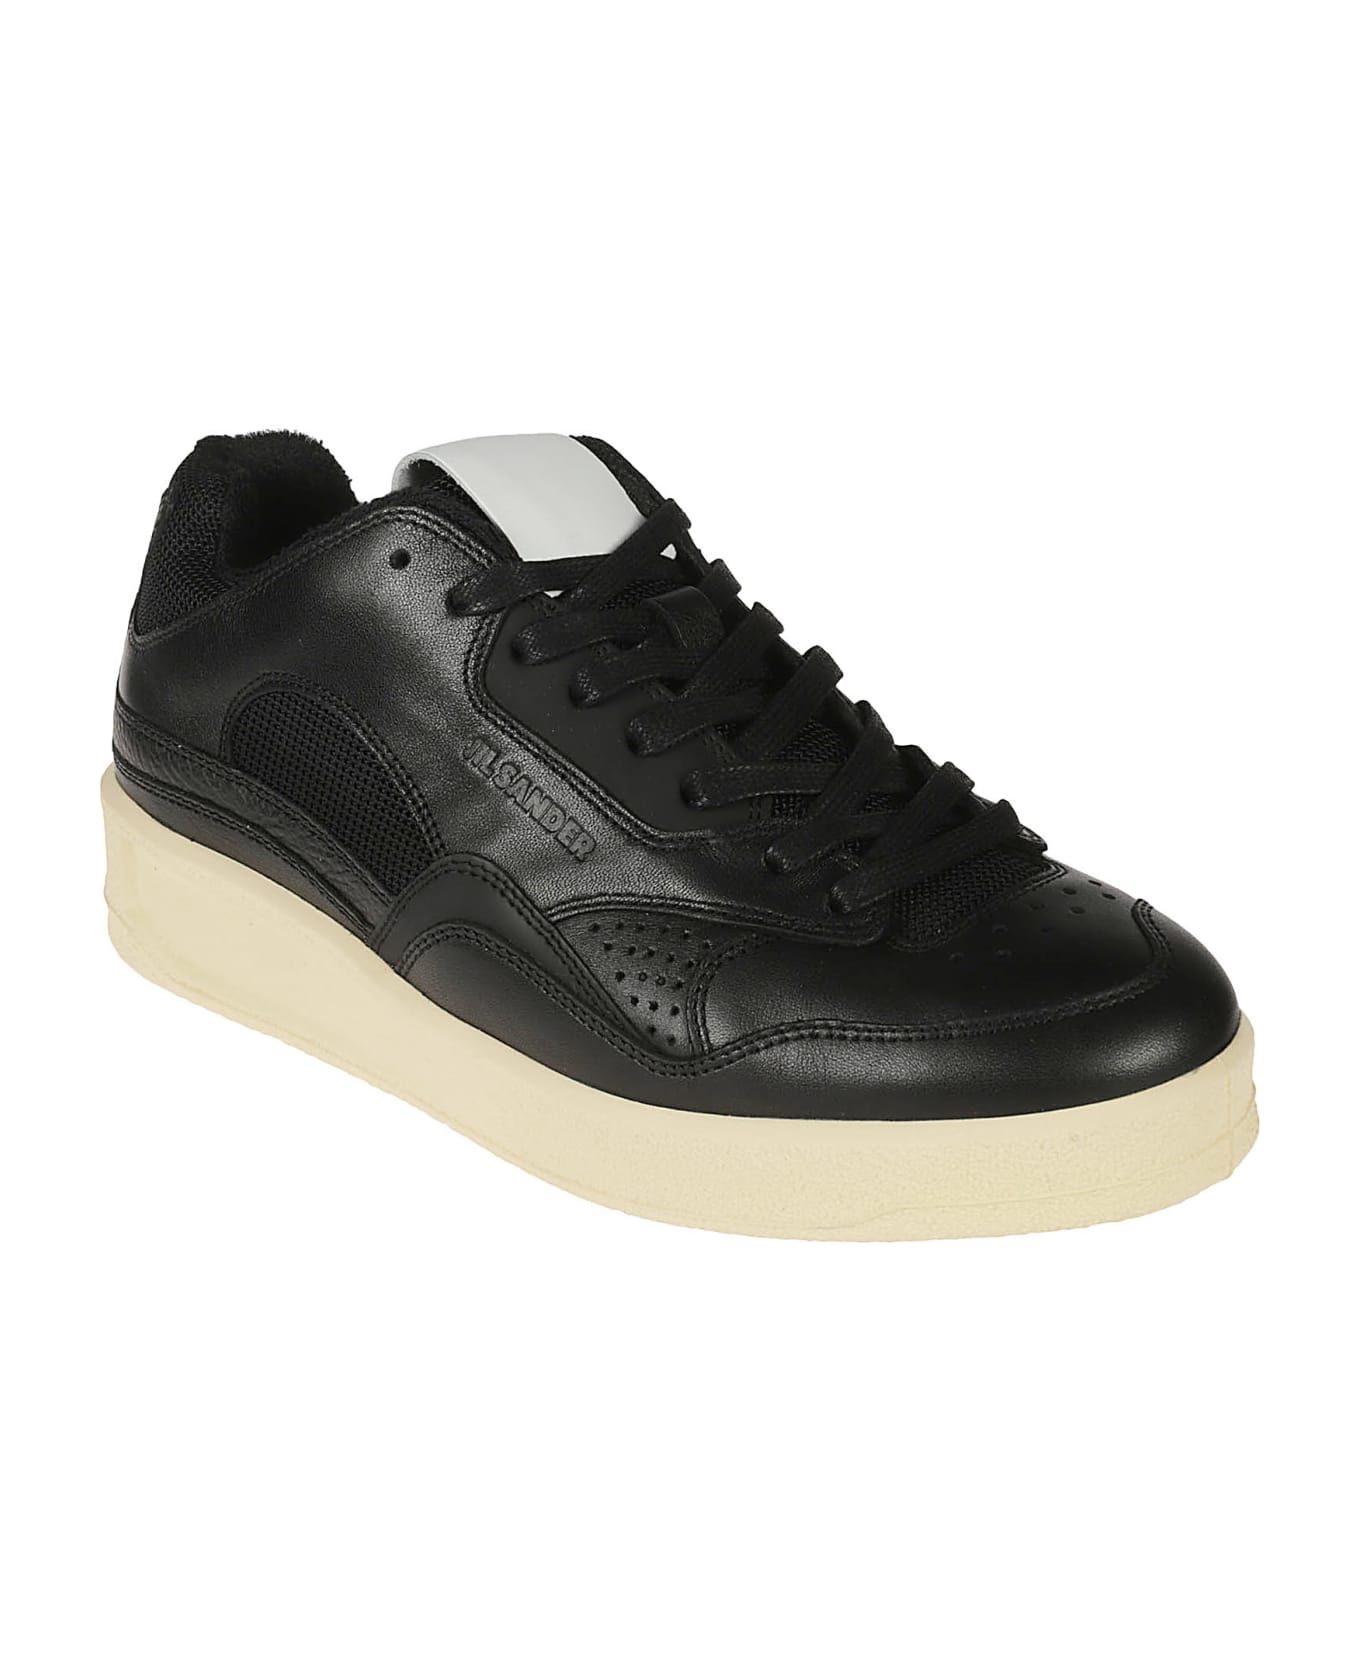 Jil Sander Mesh Paneled Sneakers - Black/Ecru